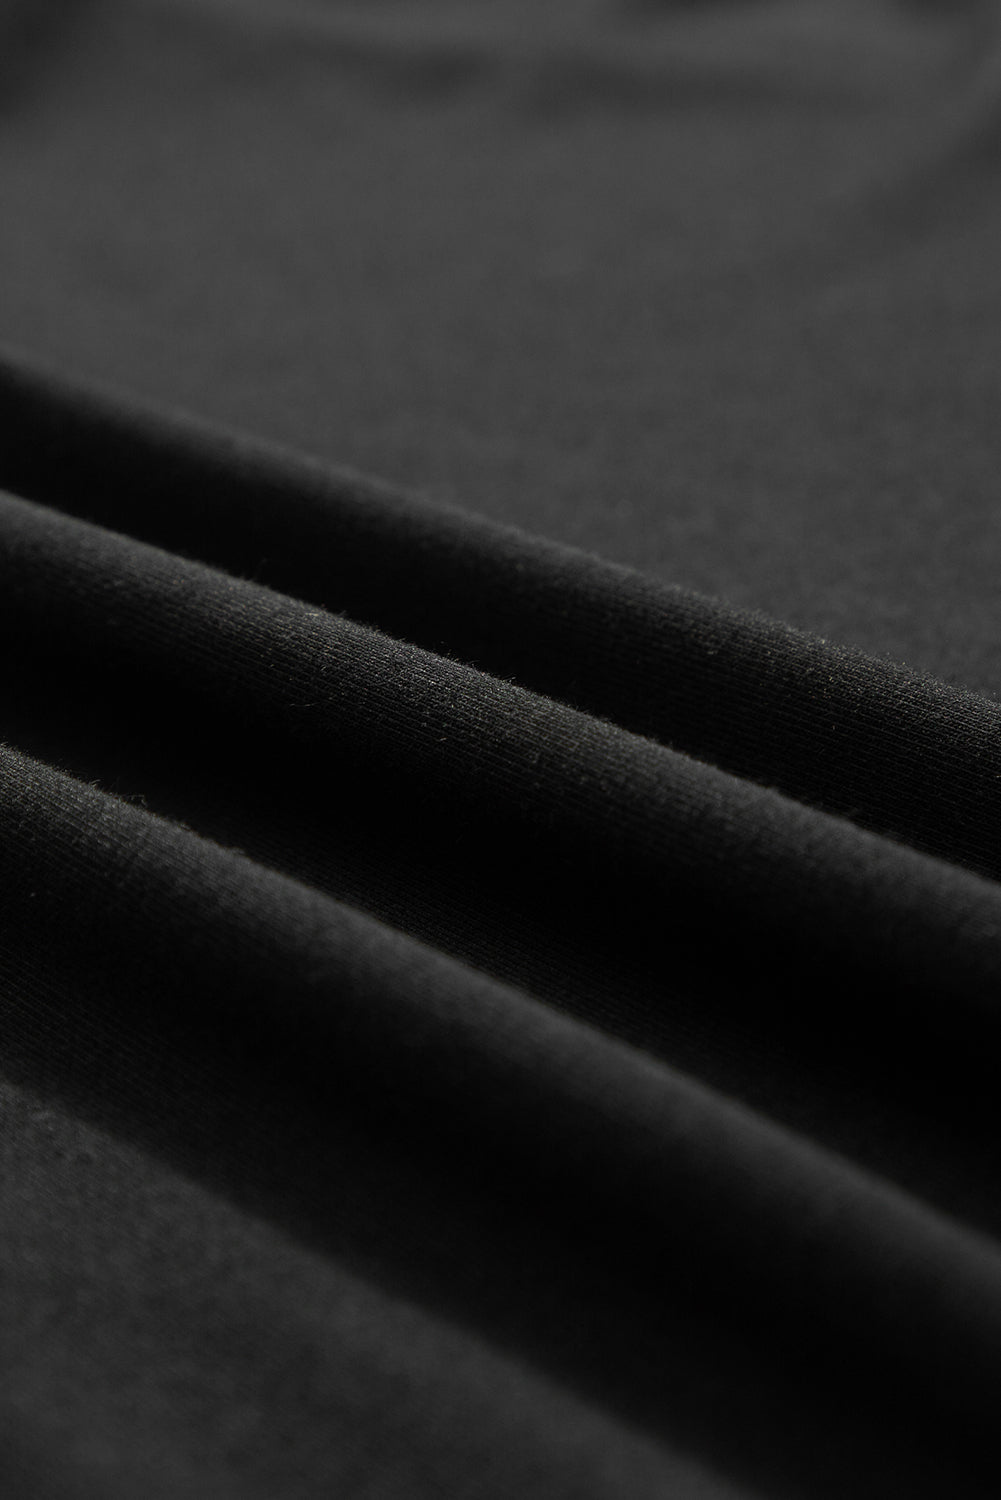 T-shirt surdimensionné noir avec détails en dentelle au crochet